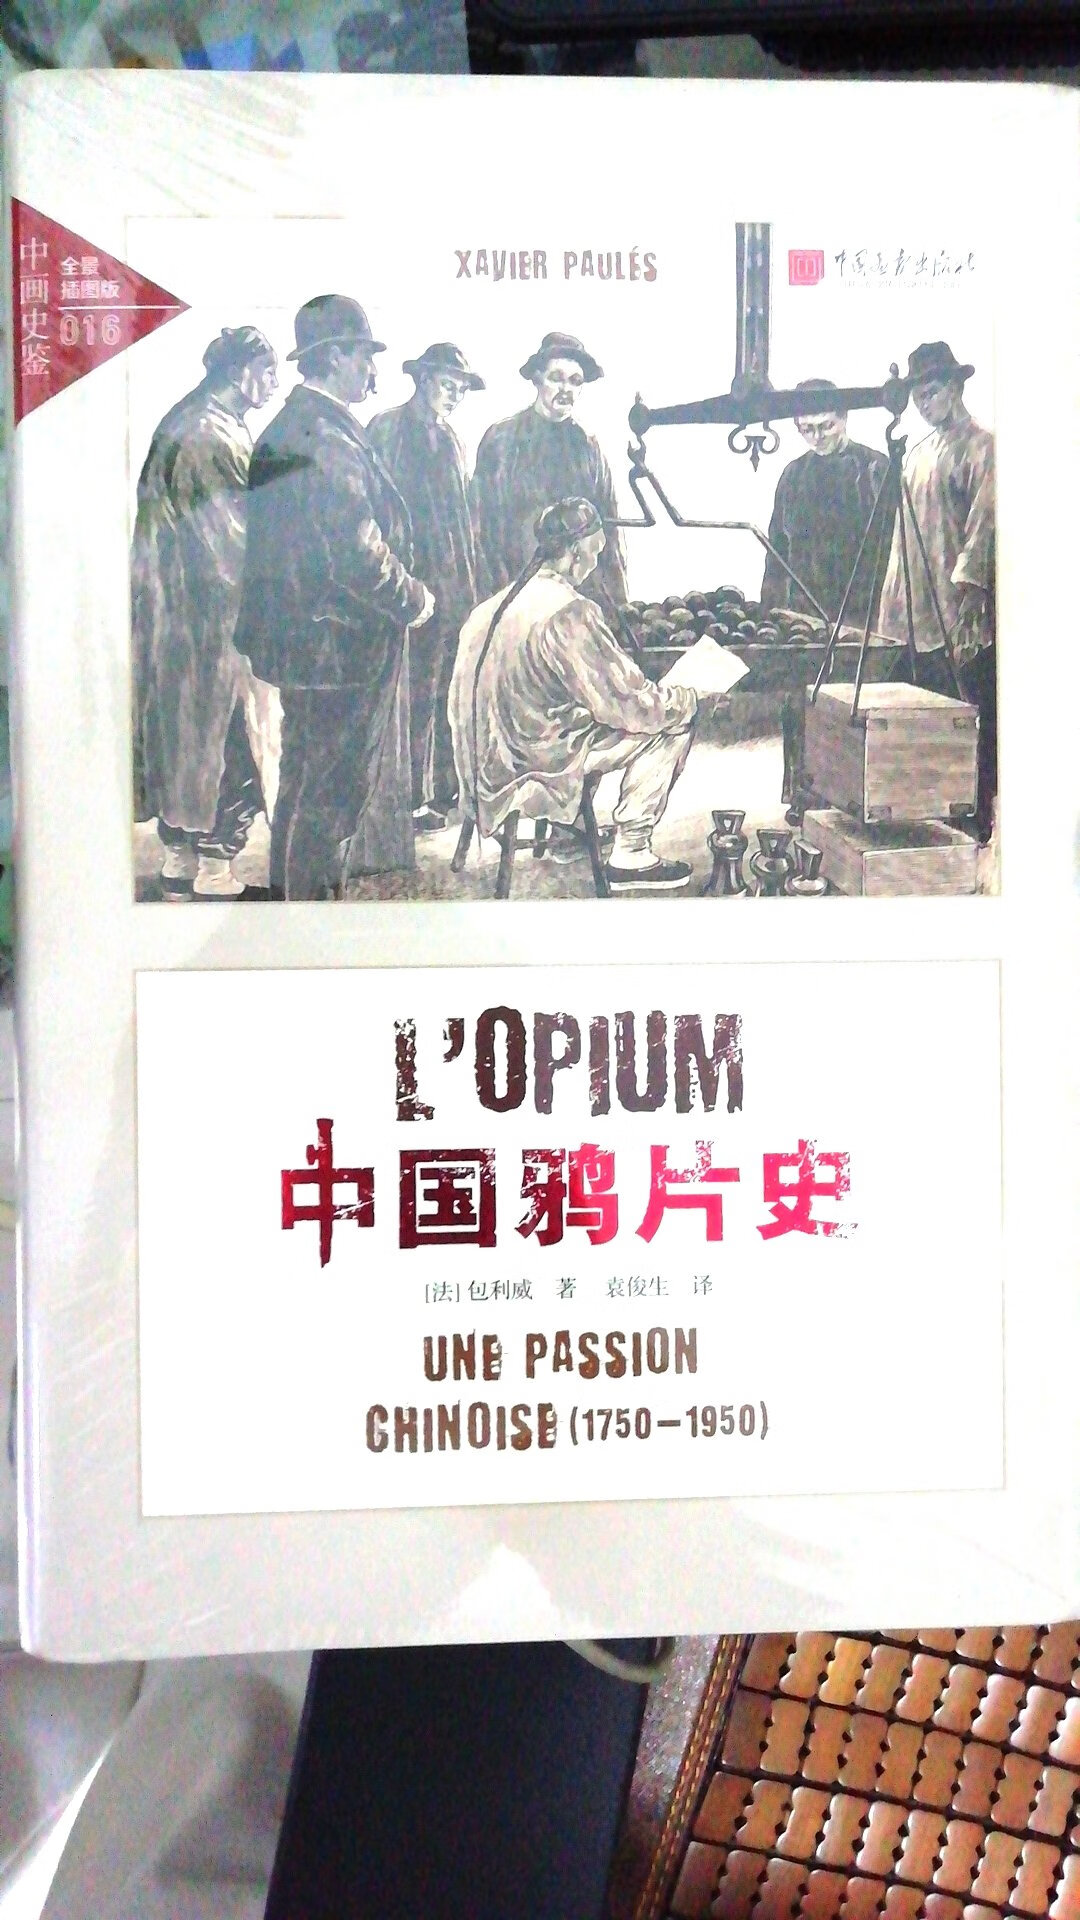 包装很不错，很完好，要好好读一读，有时候可能外国历史学家看待中国近代更客观吧，好评！